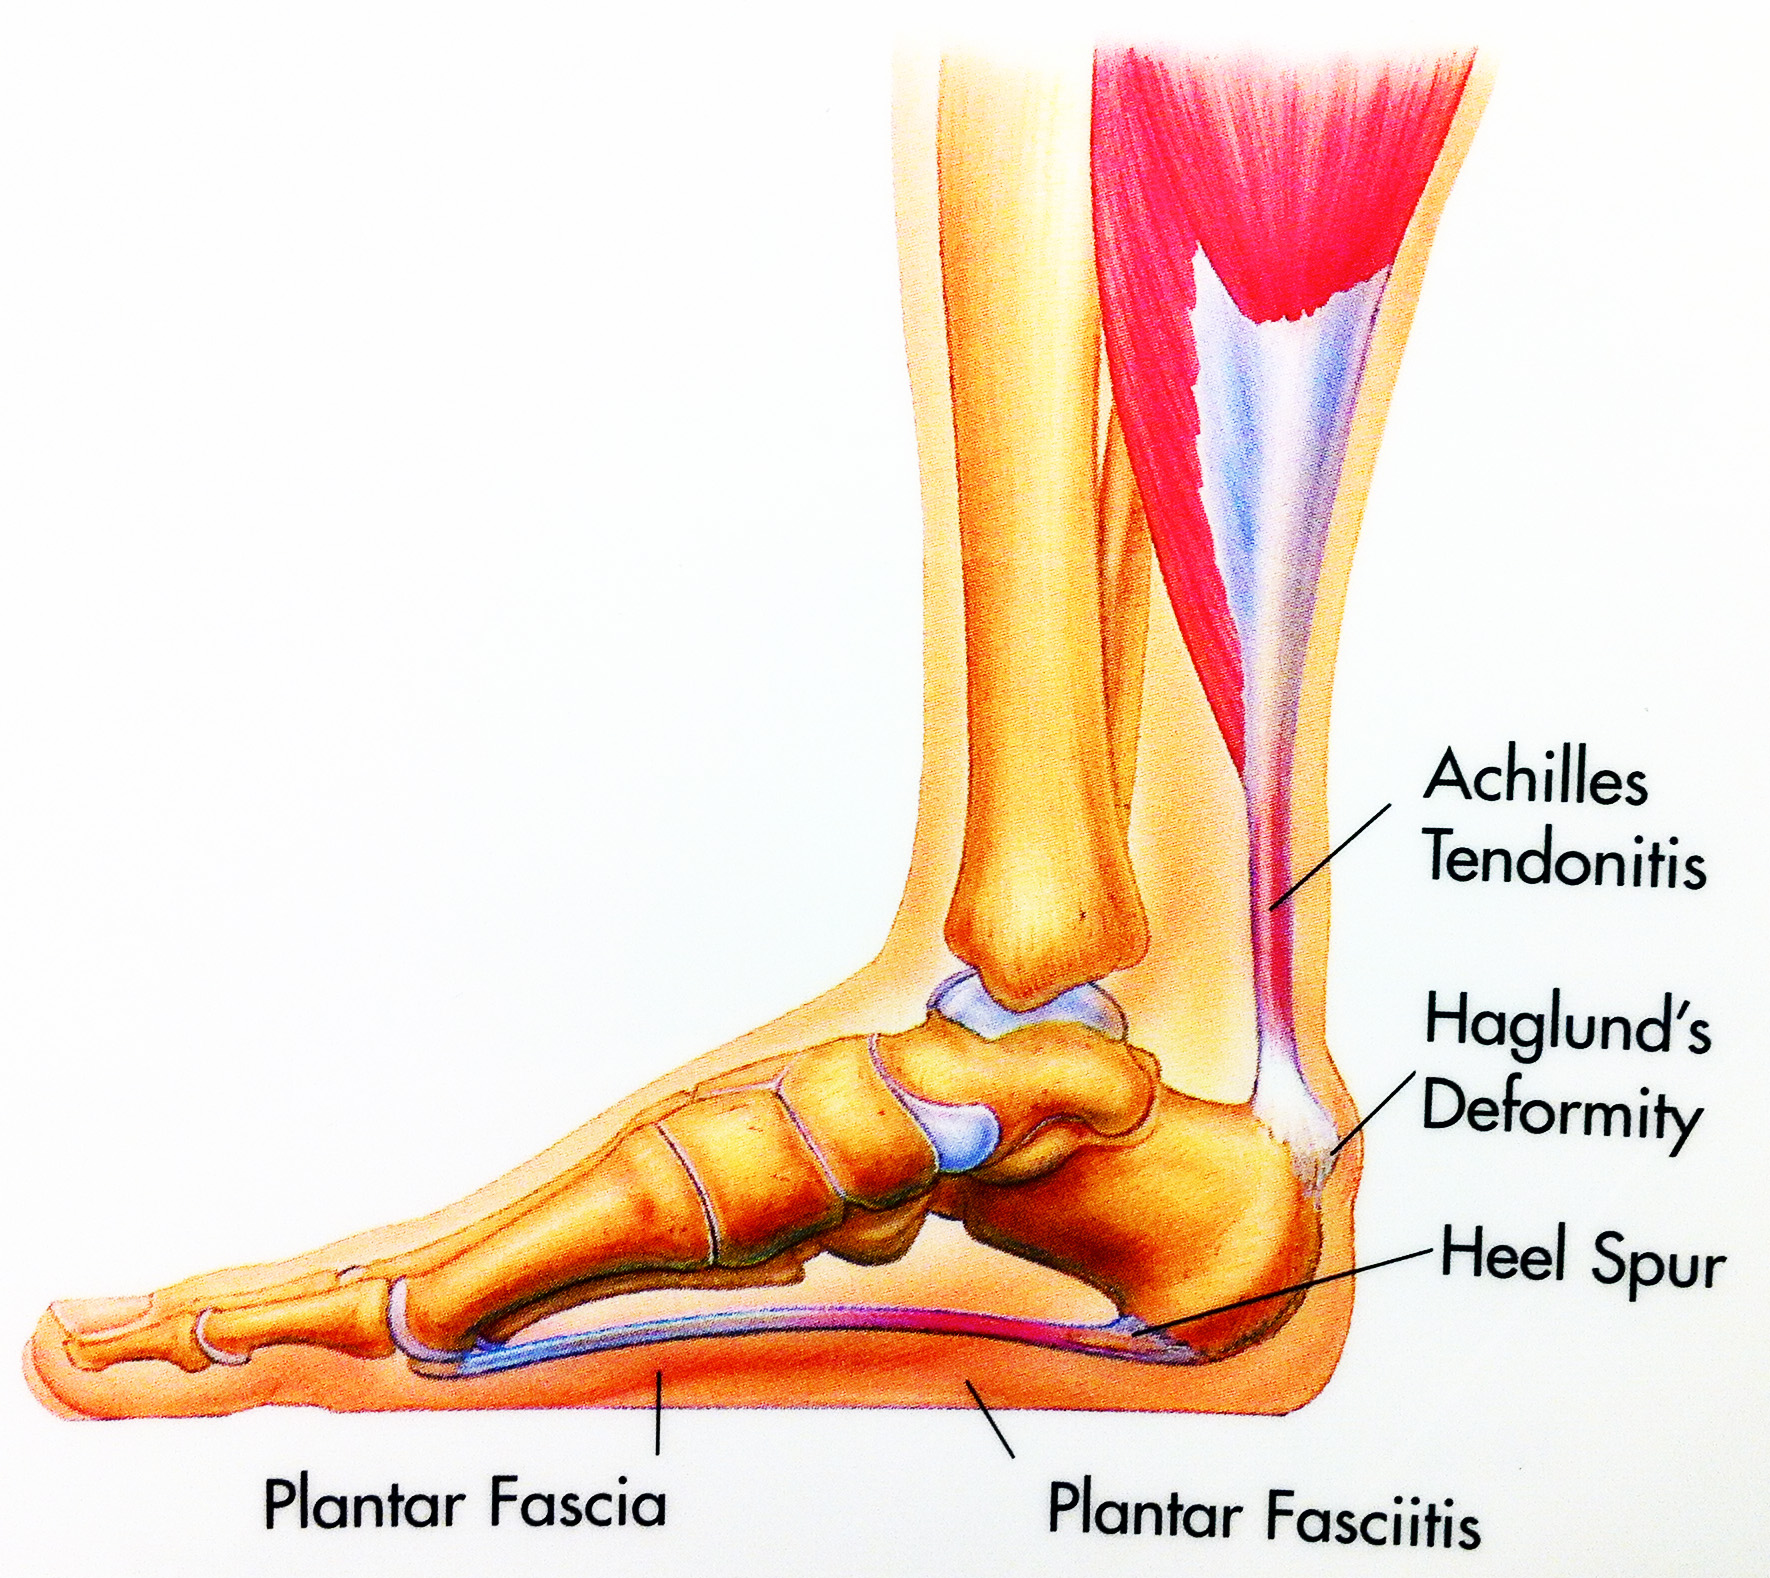 symptoms of bone spurs in feet